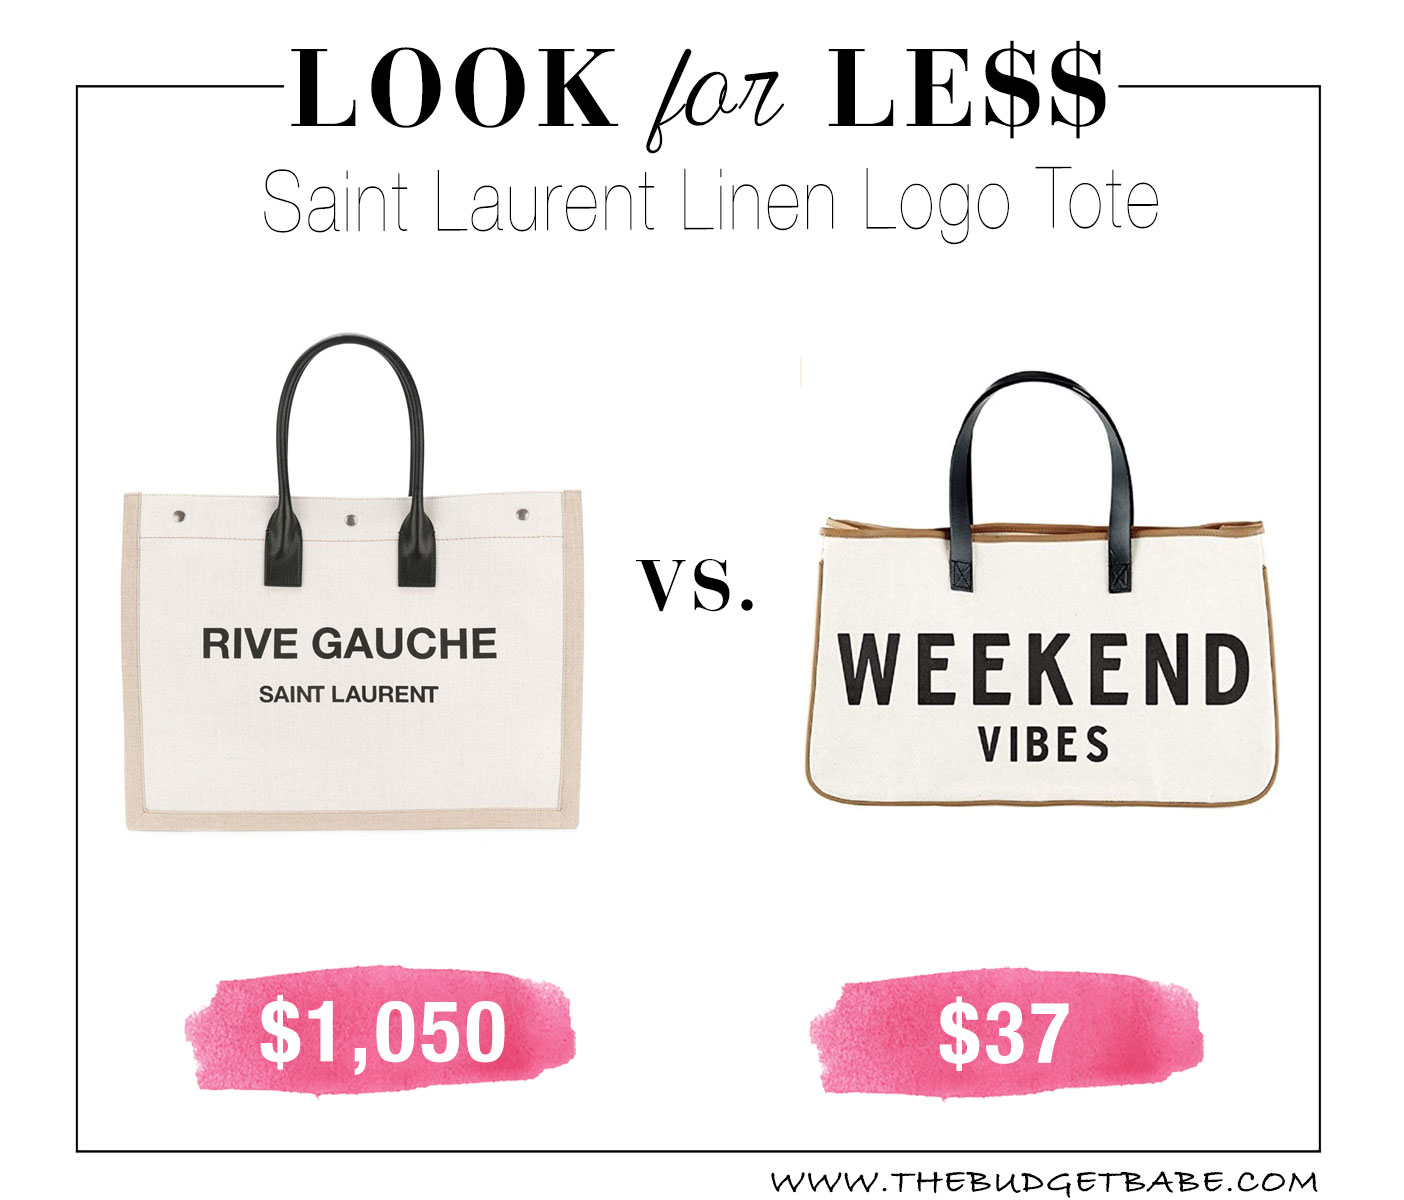 Saint Laurent linen logo tote look for less